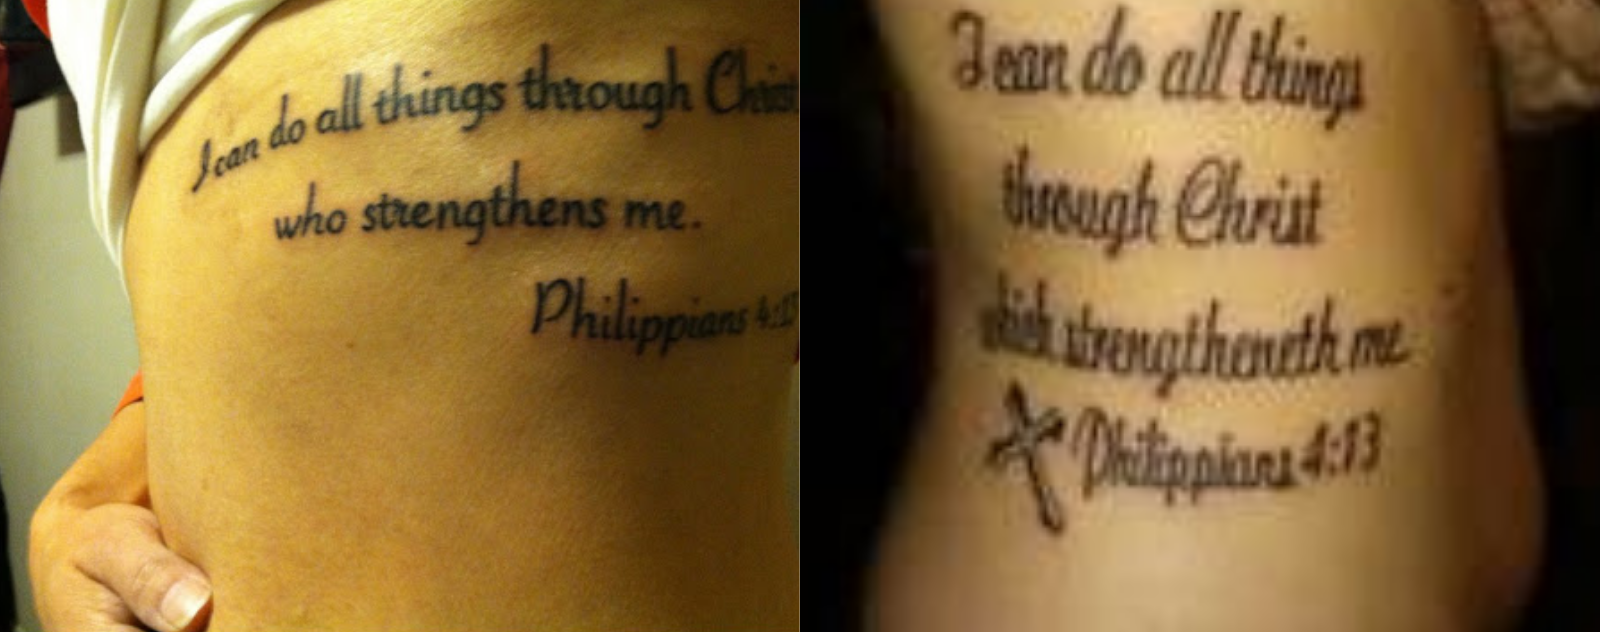 philippians-4-13-tattoo-ribs-1